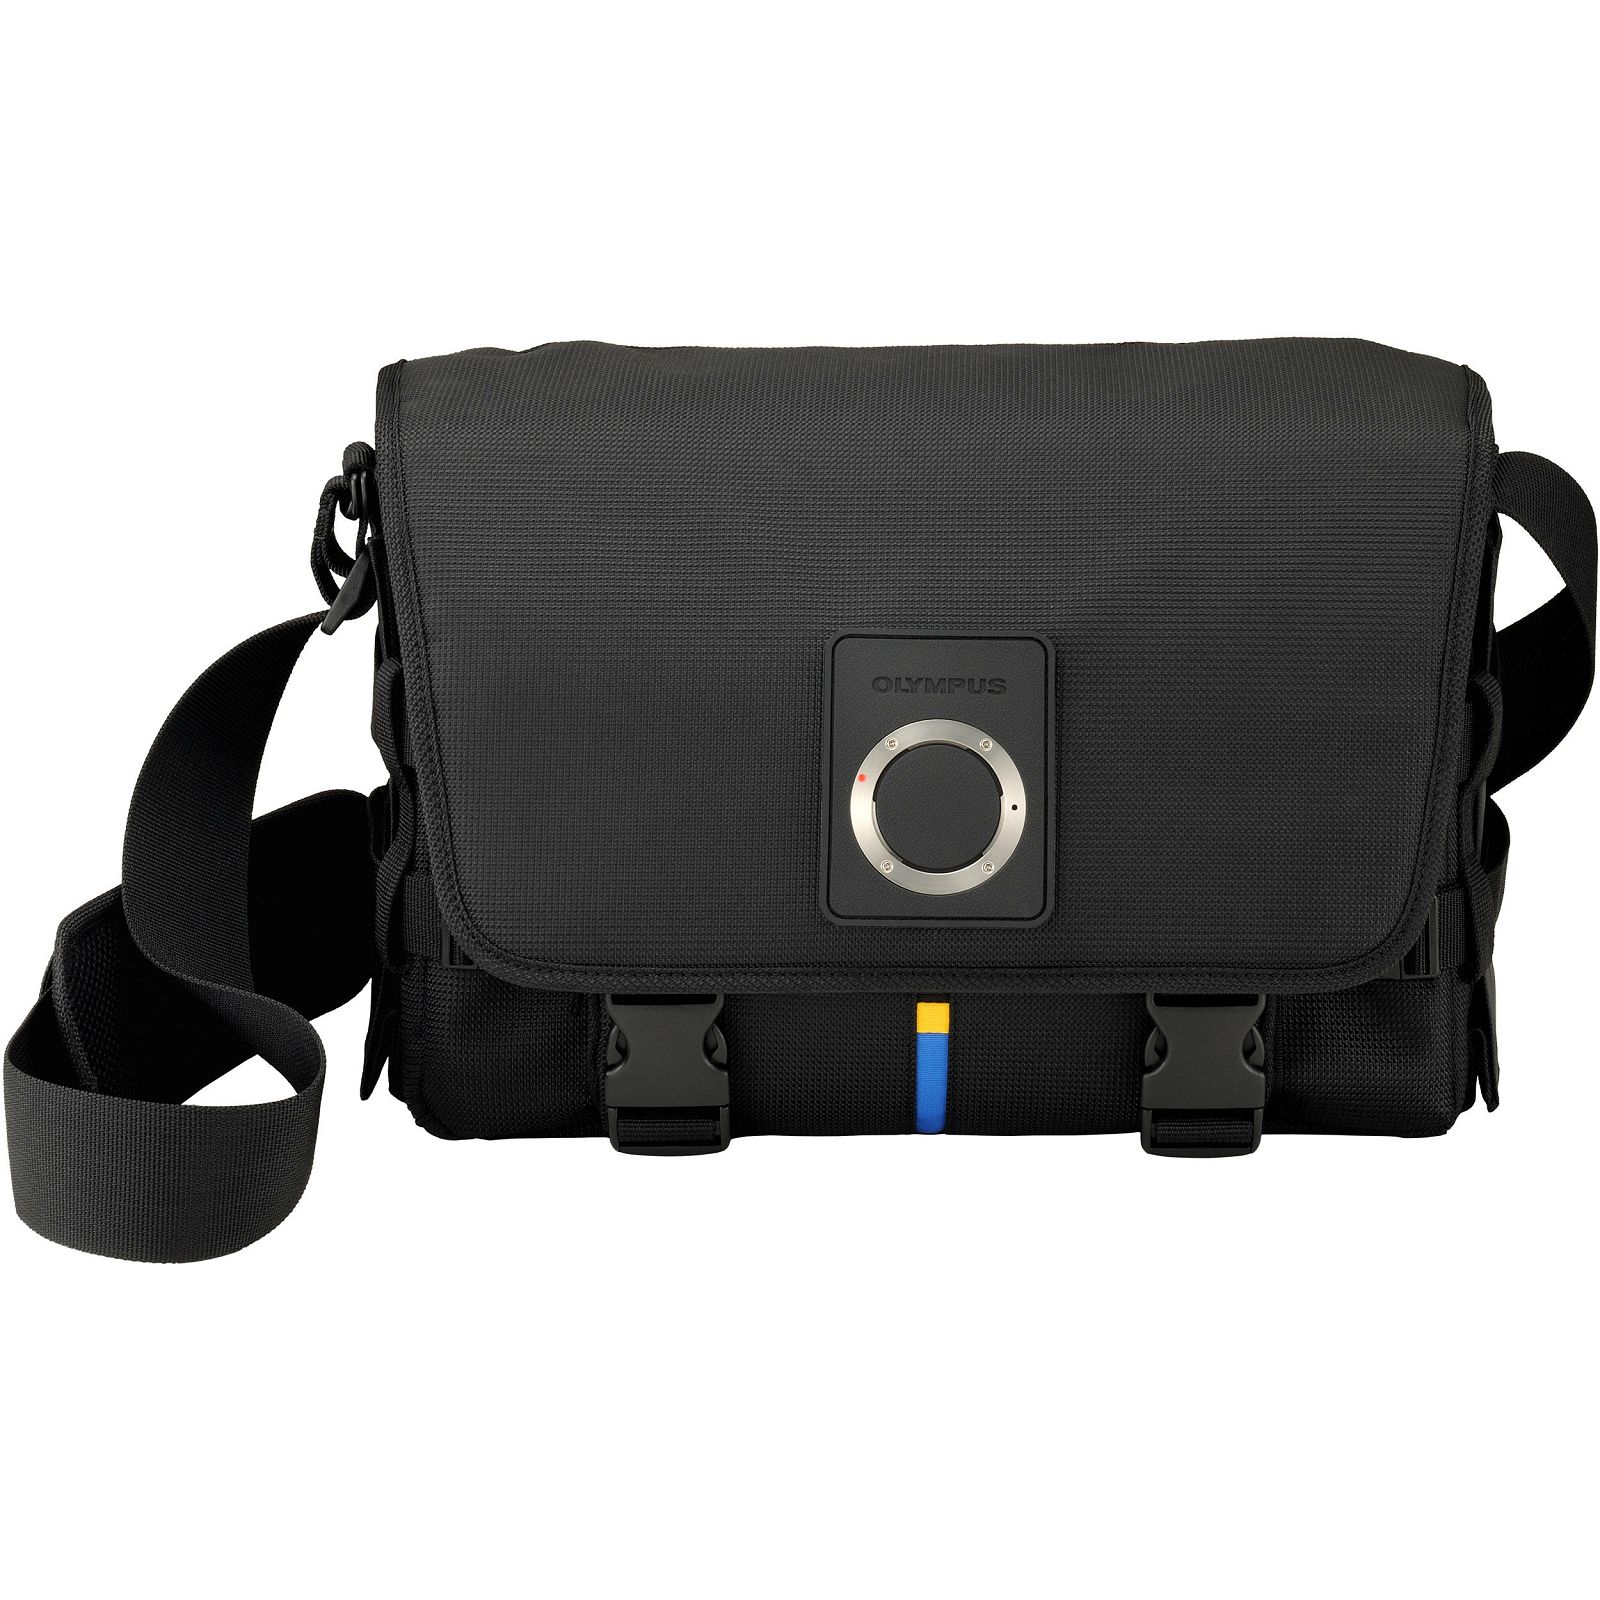 Olympus CBG-10 System Camera Bag V613013BW000